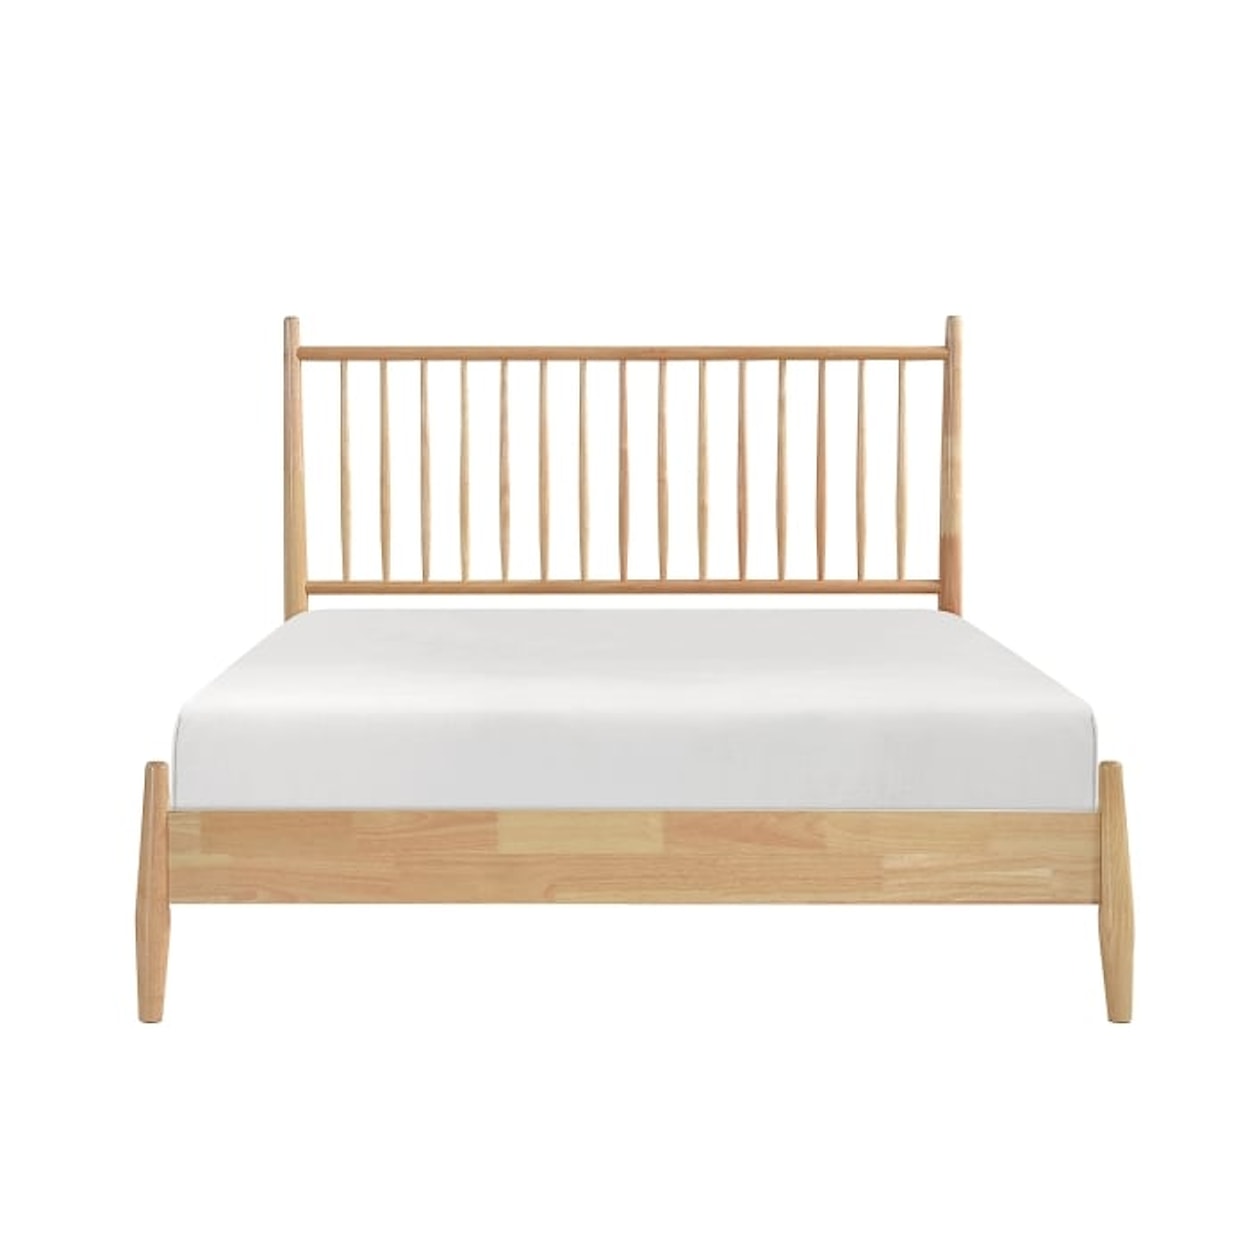 Homelegance Furniture Sona Queen Platform Bed